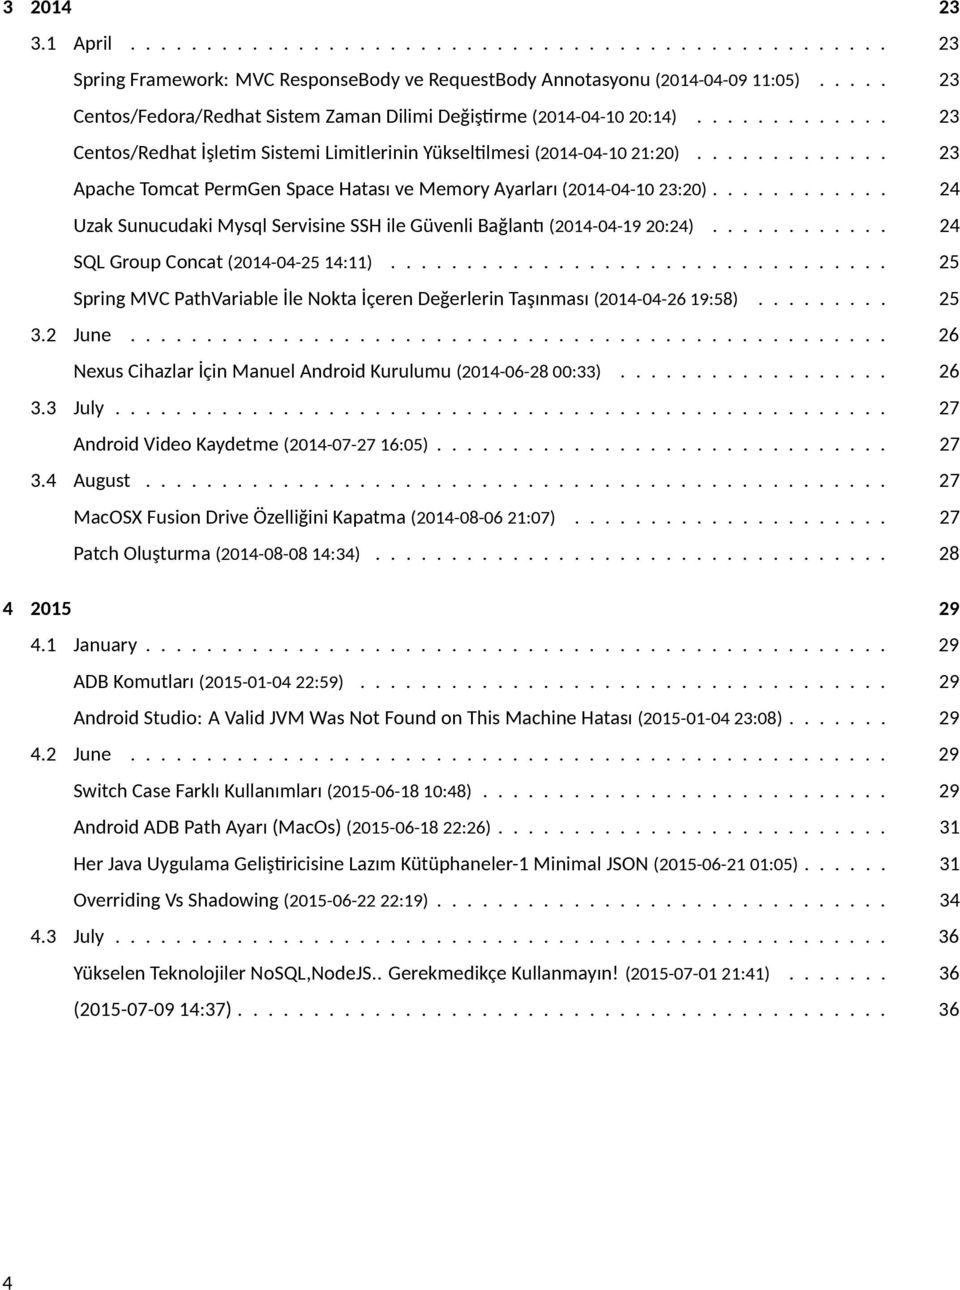 ............ 23 Apache Tomcat PermGen Space Hatası ve Memory Ayarları (2014-04-10 23:20)............ 24 Uzak Sunucudaki Mysql Servisine SSH ile Güvenli Bağlan (2014-04-19 20:24).